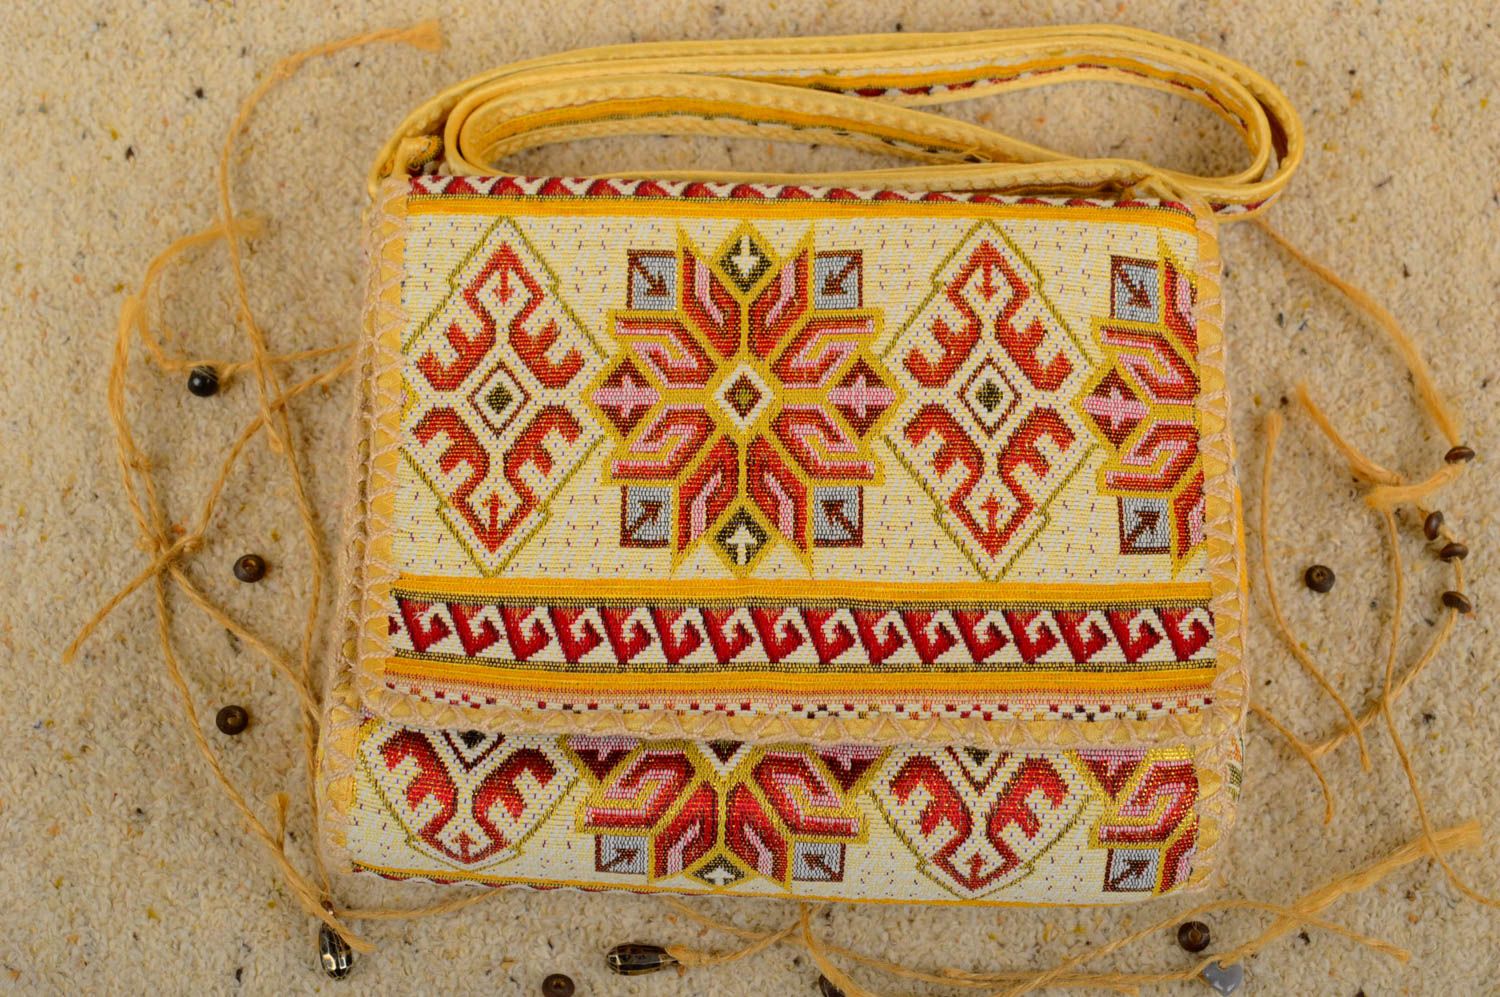 Sac bandoulière en tissu Sac fait main style ethnique Accessoire femme photo 1